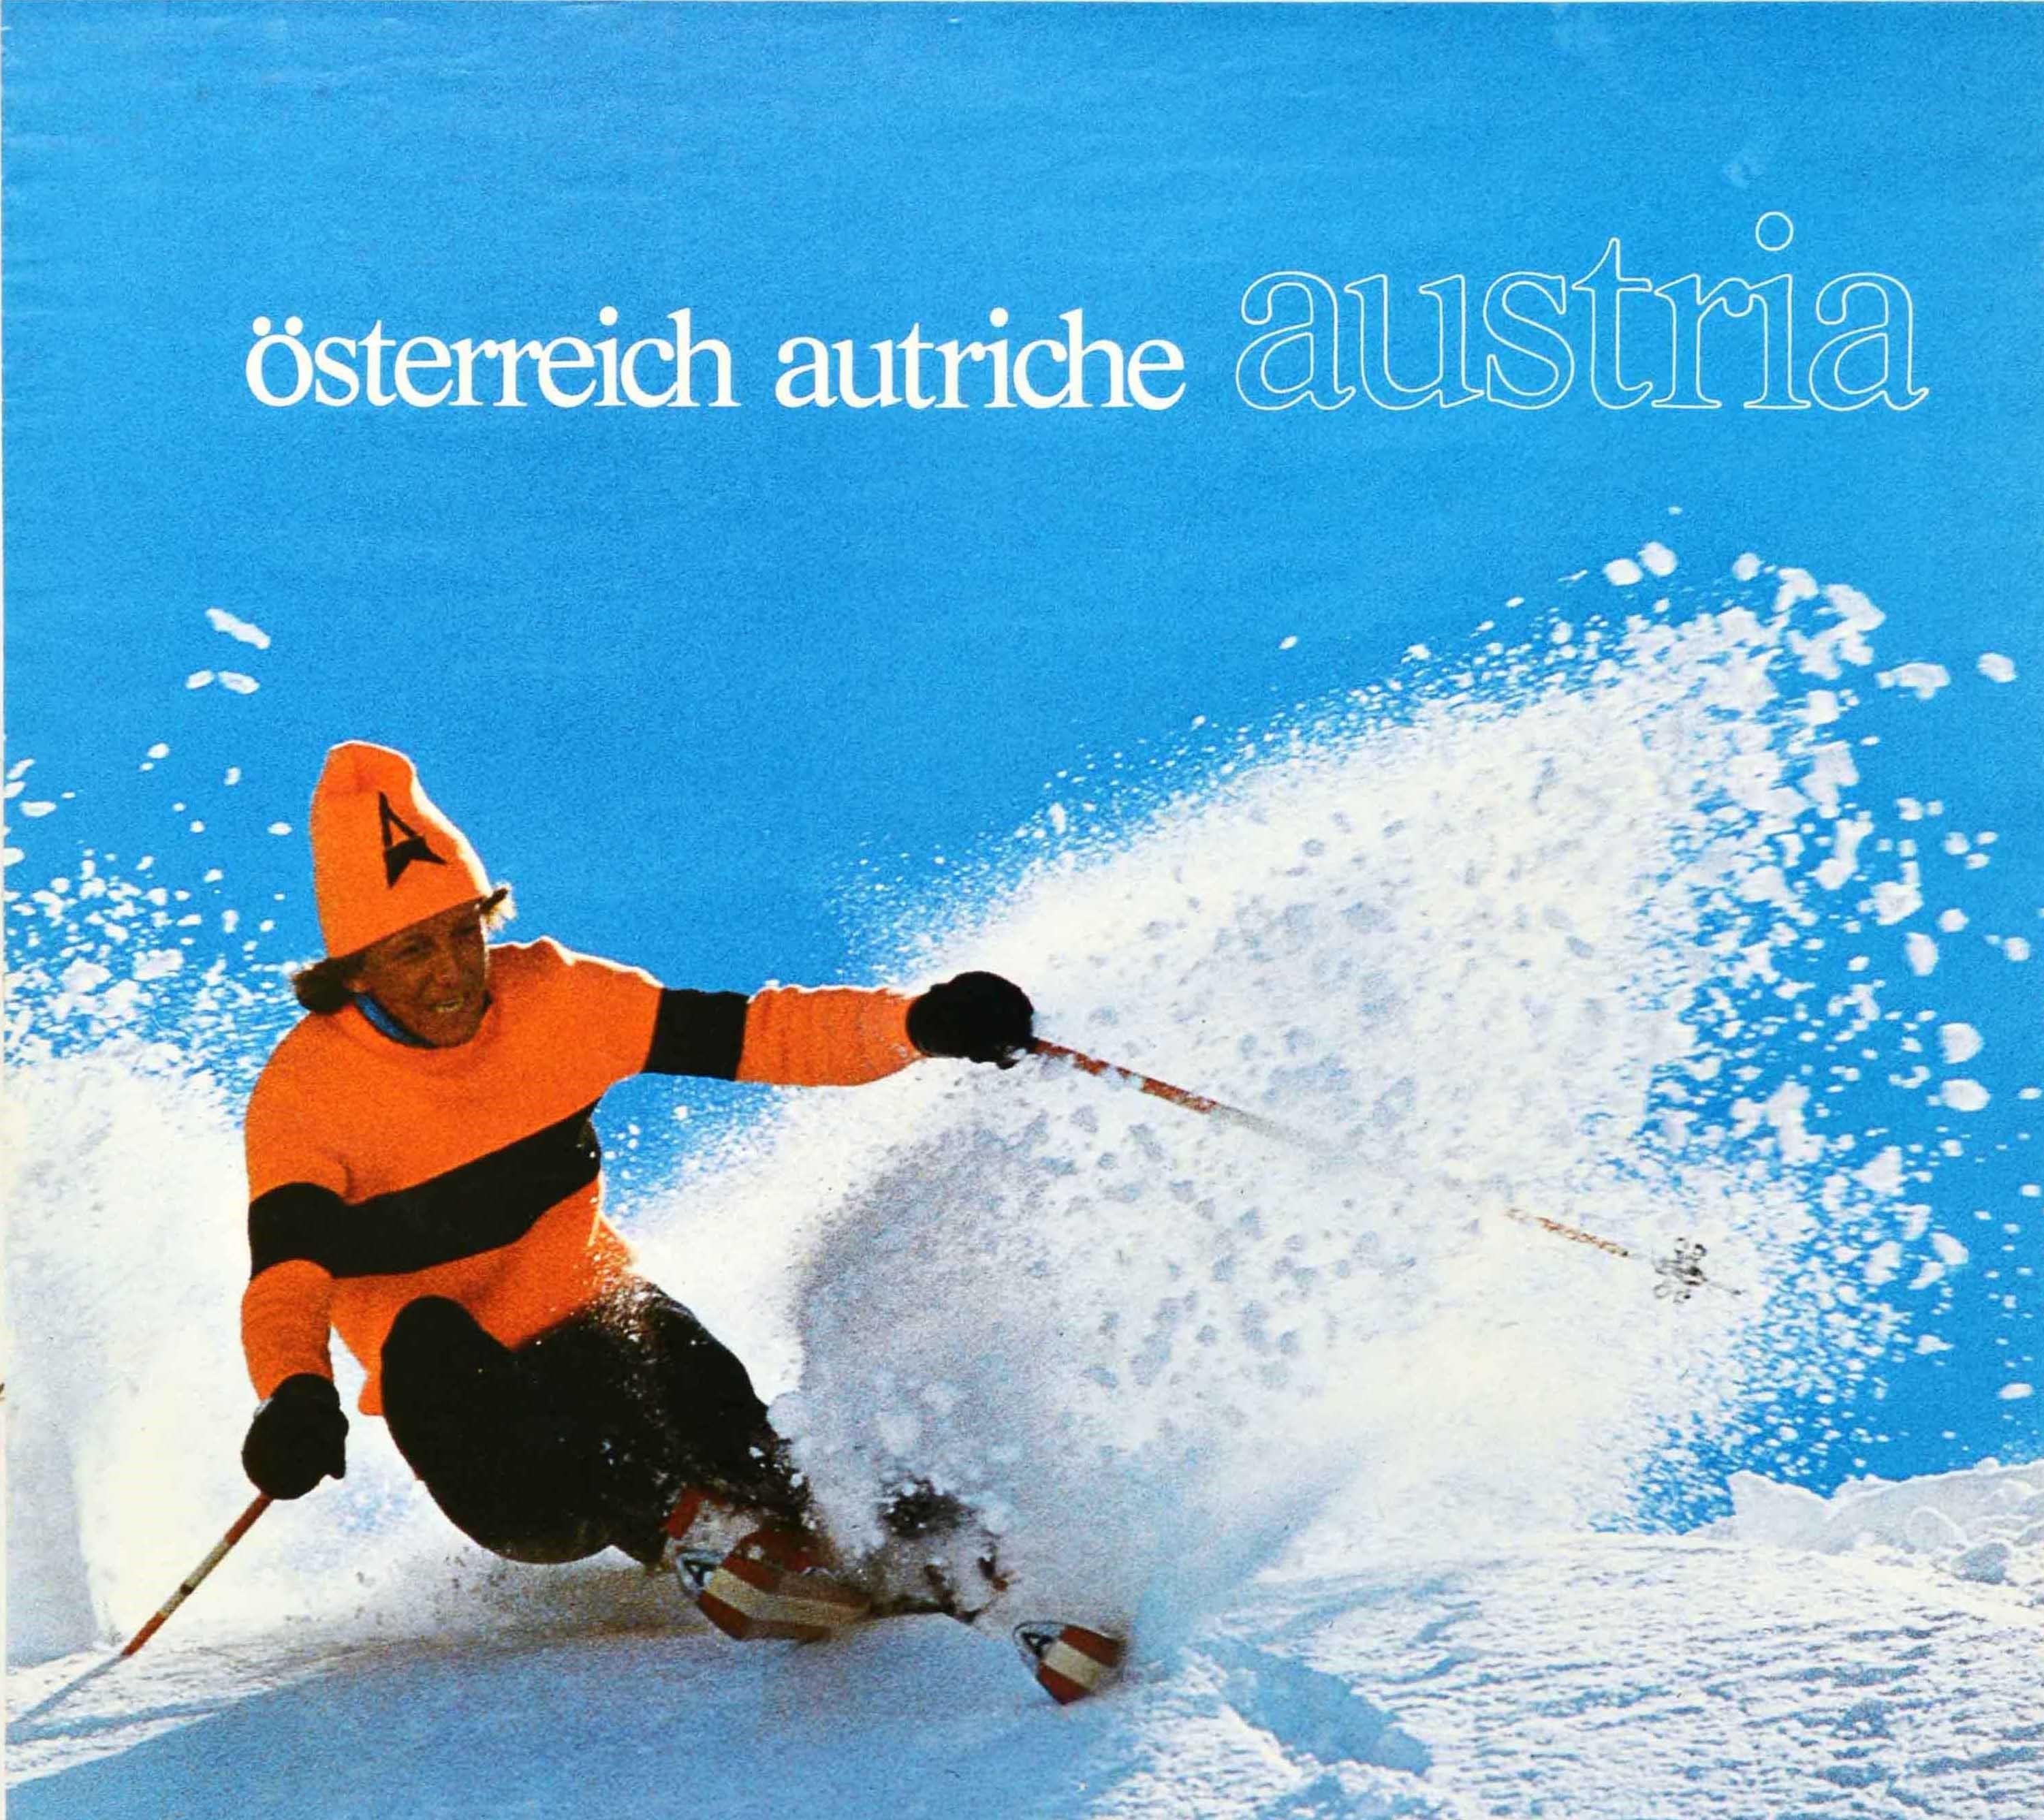 Original Vintage-Wintersport-Reiseplakat für Österreich Österreich zeigt eine Dame beim Skifahren auf einem schneebedeckten Berg mit Geschwindigkeit in der Sonne mit dem fetten weißen Text auf dem blauen Himmel über. Herausgegeben von der